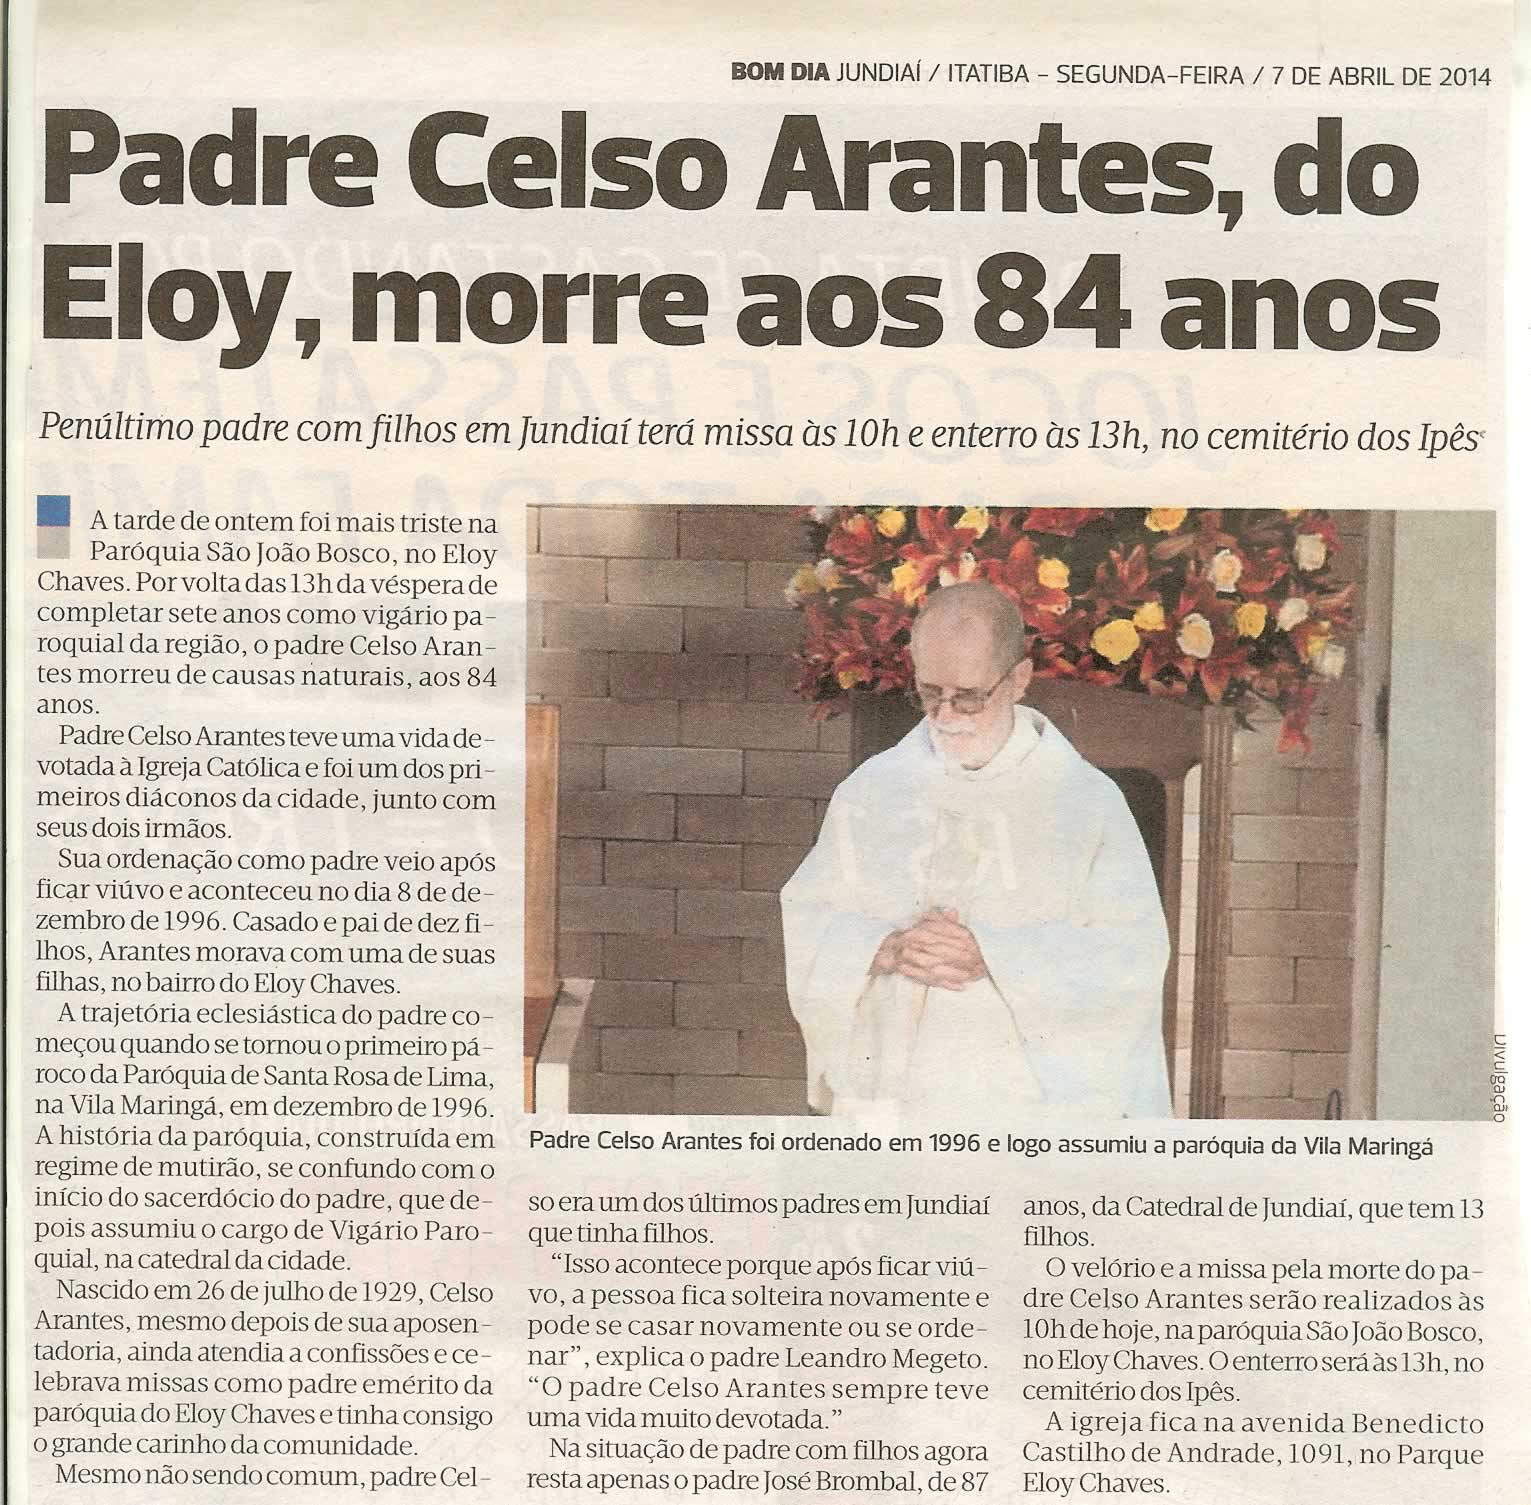 Bom Dia Jundiaí - 07/04/14 - Padre Celso Arantes, do Eloy, morre aos 84  anos -